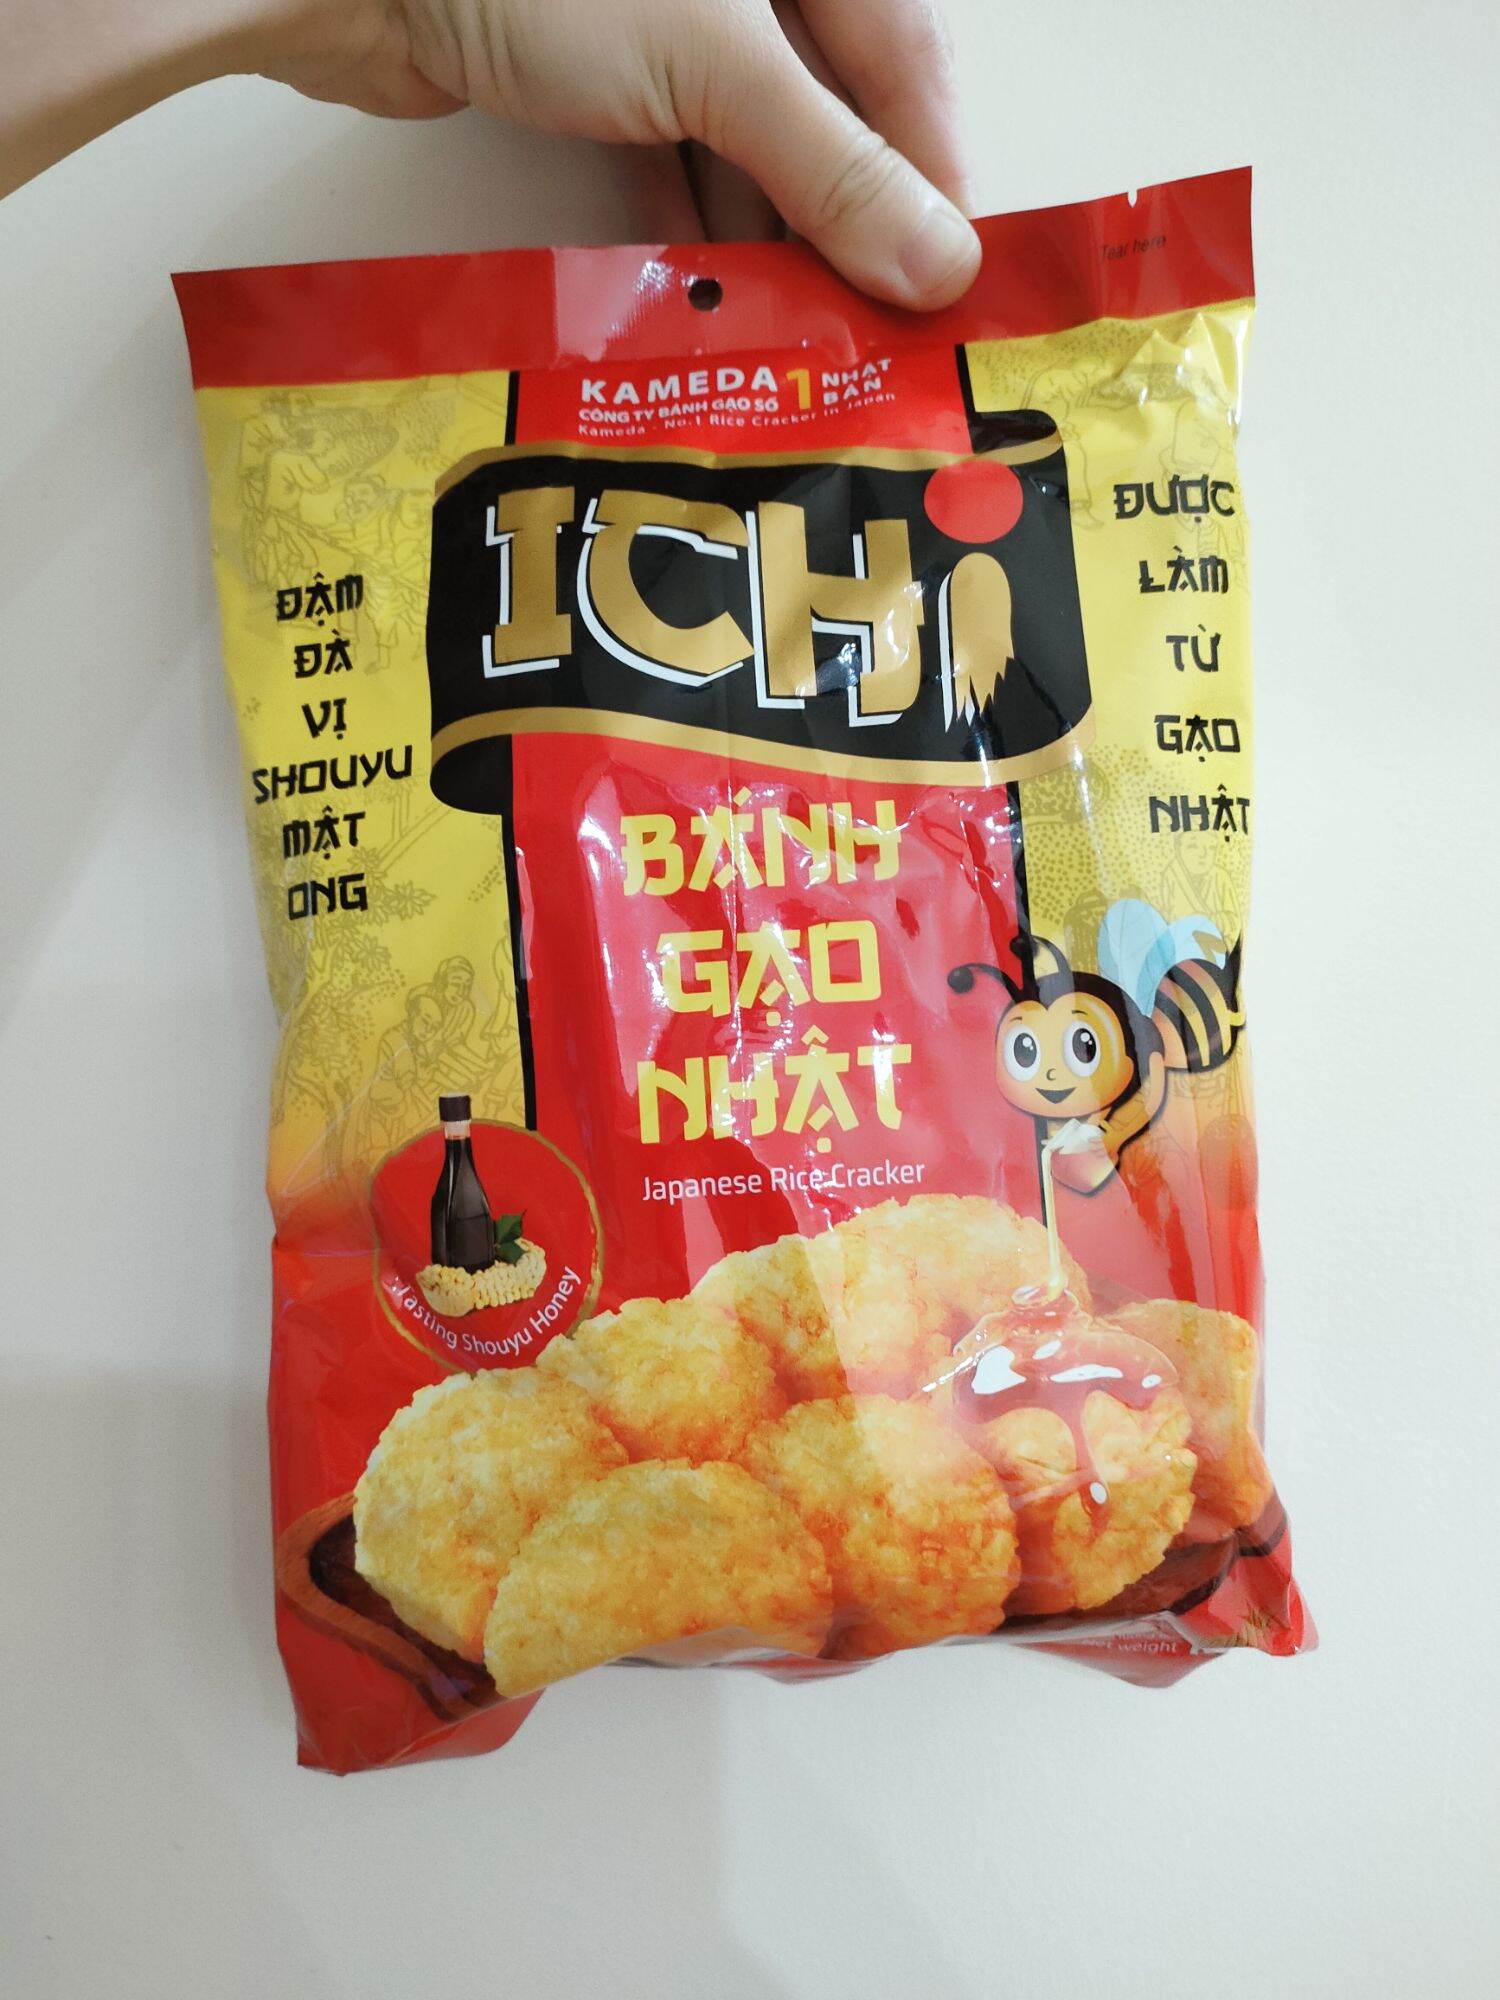 Bánh gạo Ichi vị Shouyu mật ong gói 100g